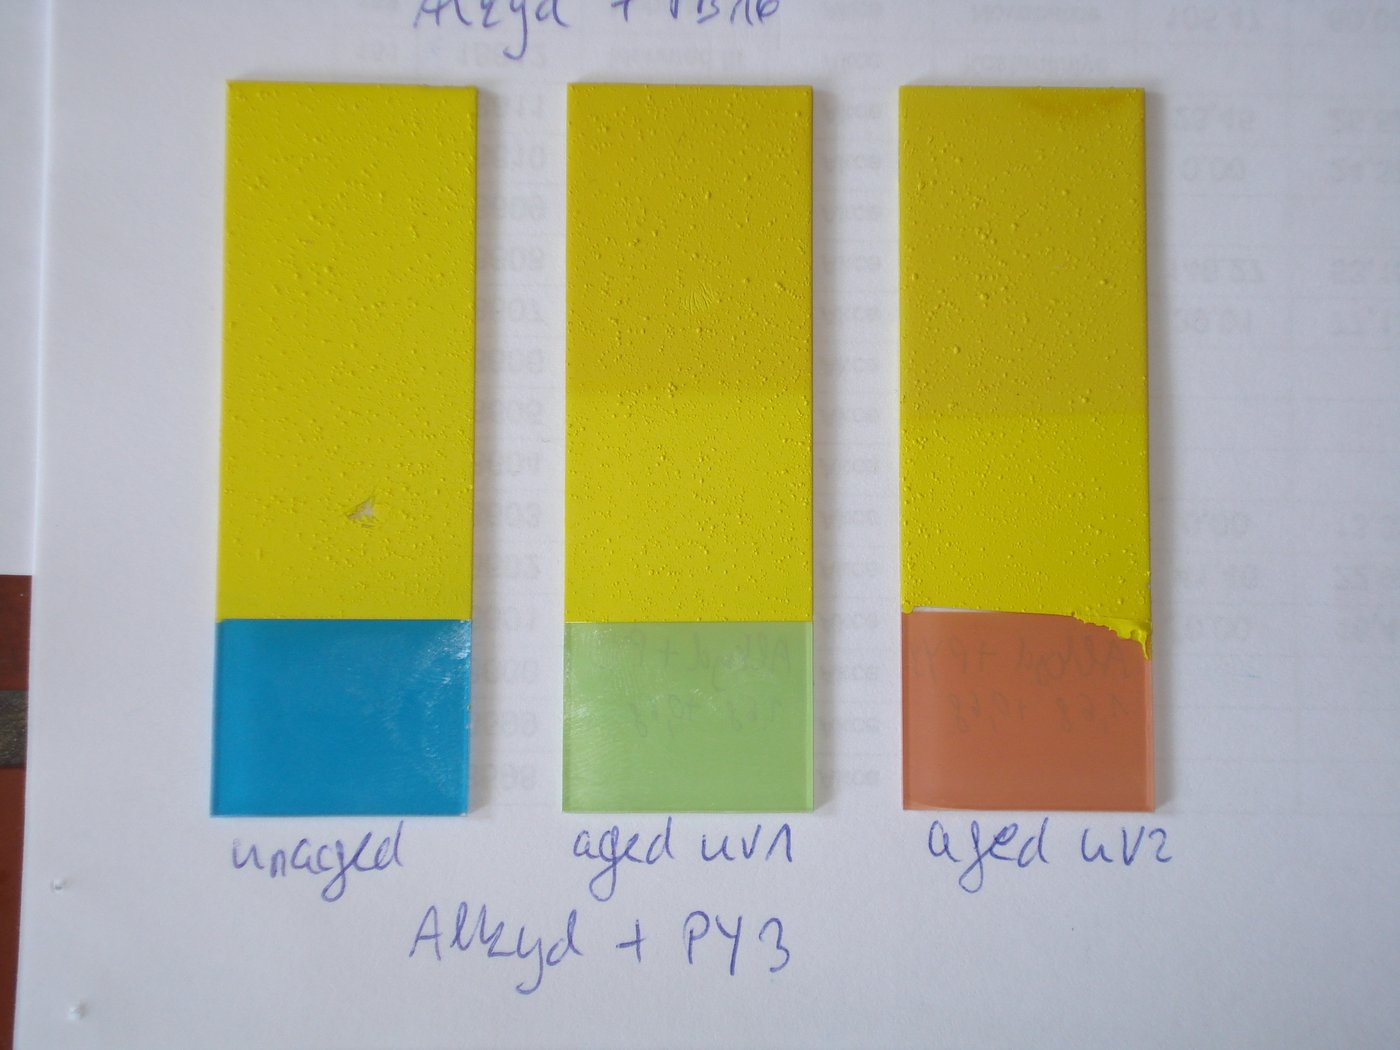 Drei mit gelber Farbe bestrichene längliche Glasplättchen auf einem Blatt Papier, darunter Beschriftung: unter dem linken steht „unaged“, unter dem mittleren steht „aged UV1“ und unter dem dritten steht „aged UV2“. Unter allen Dreien steht geschrieben: Alkyd + PY3.